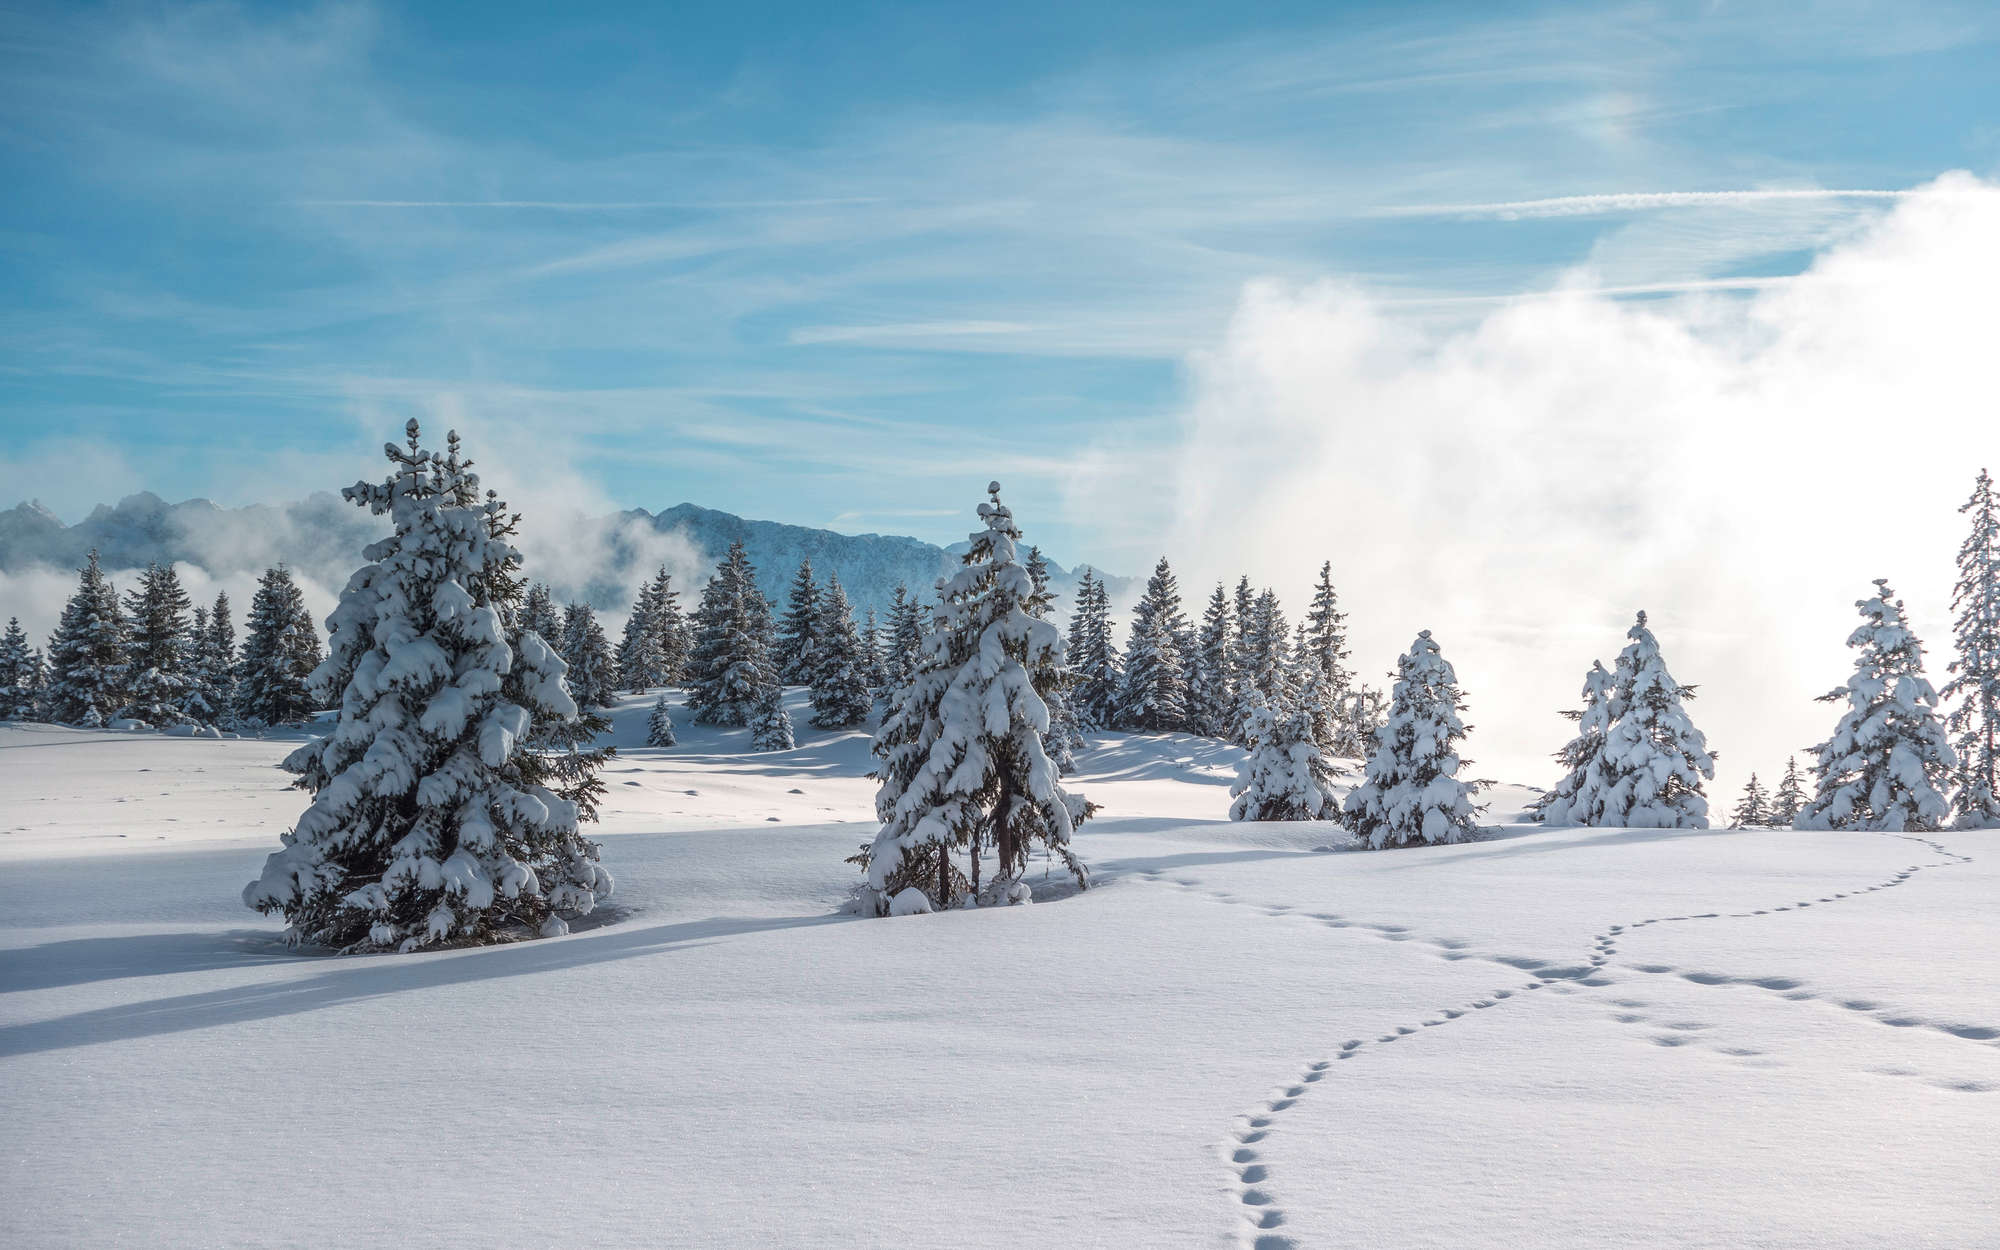             Fotomural Nieve y huellas en el bosque de invierno - tejido no tejido liso de alta calidad
        